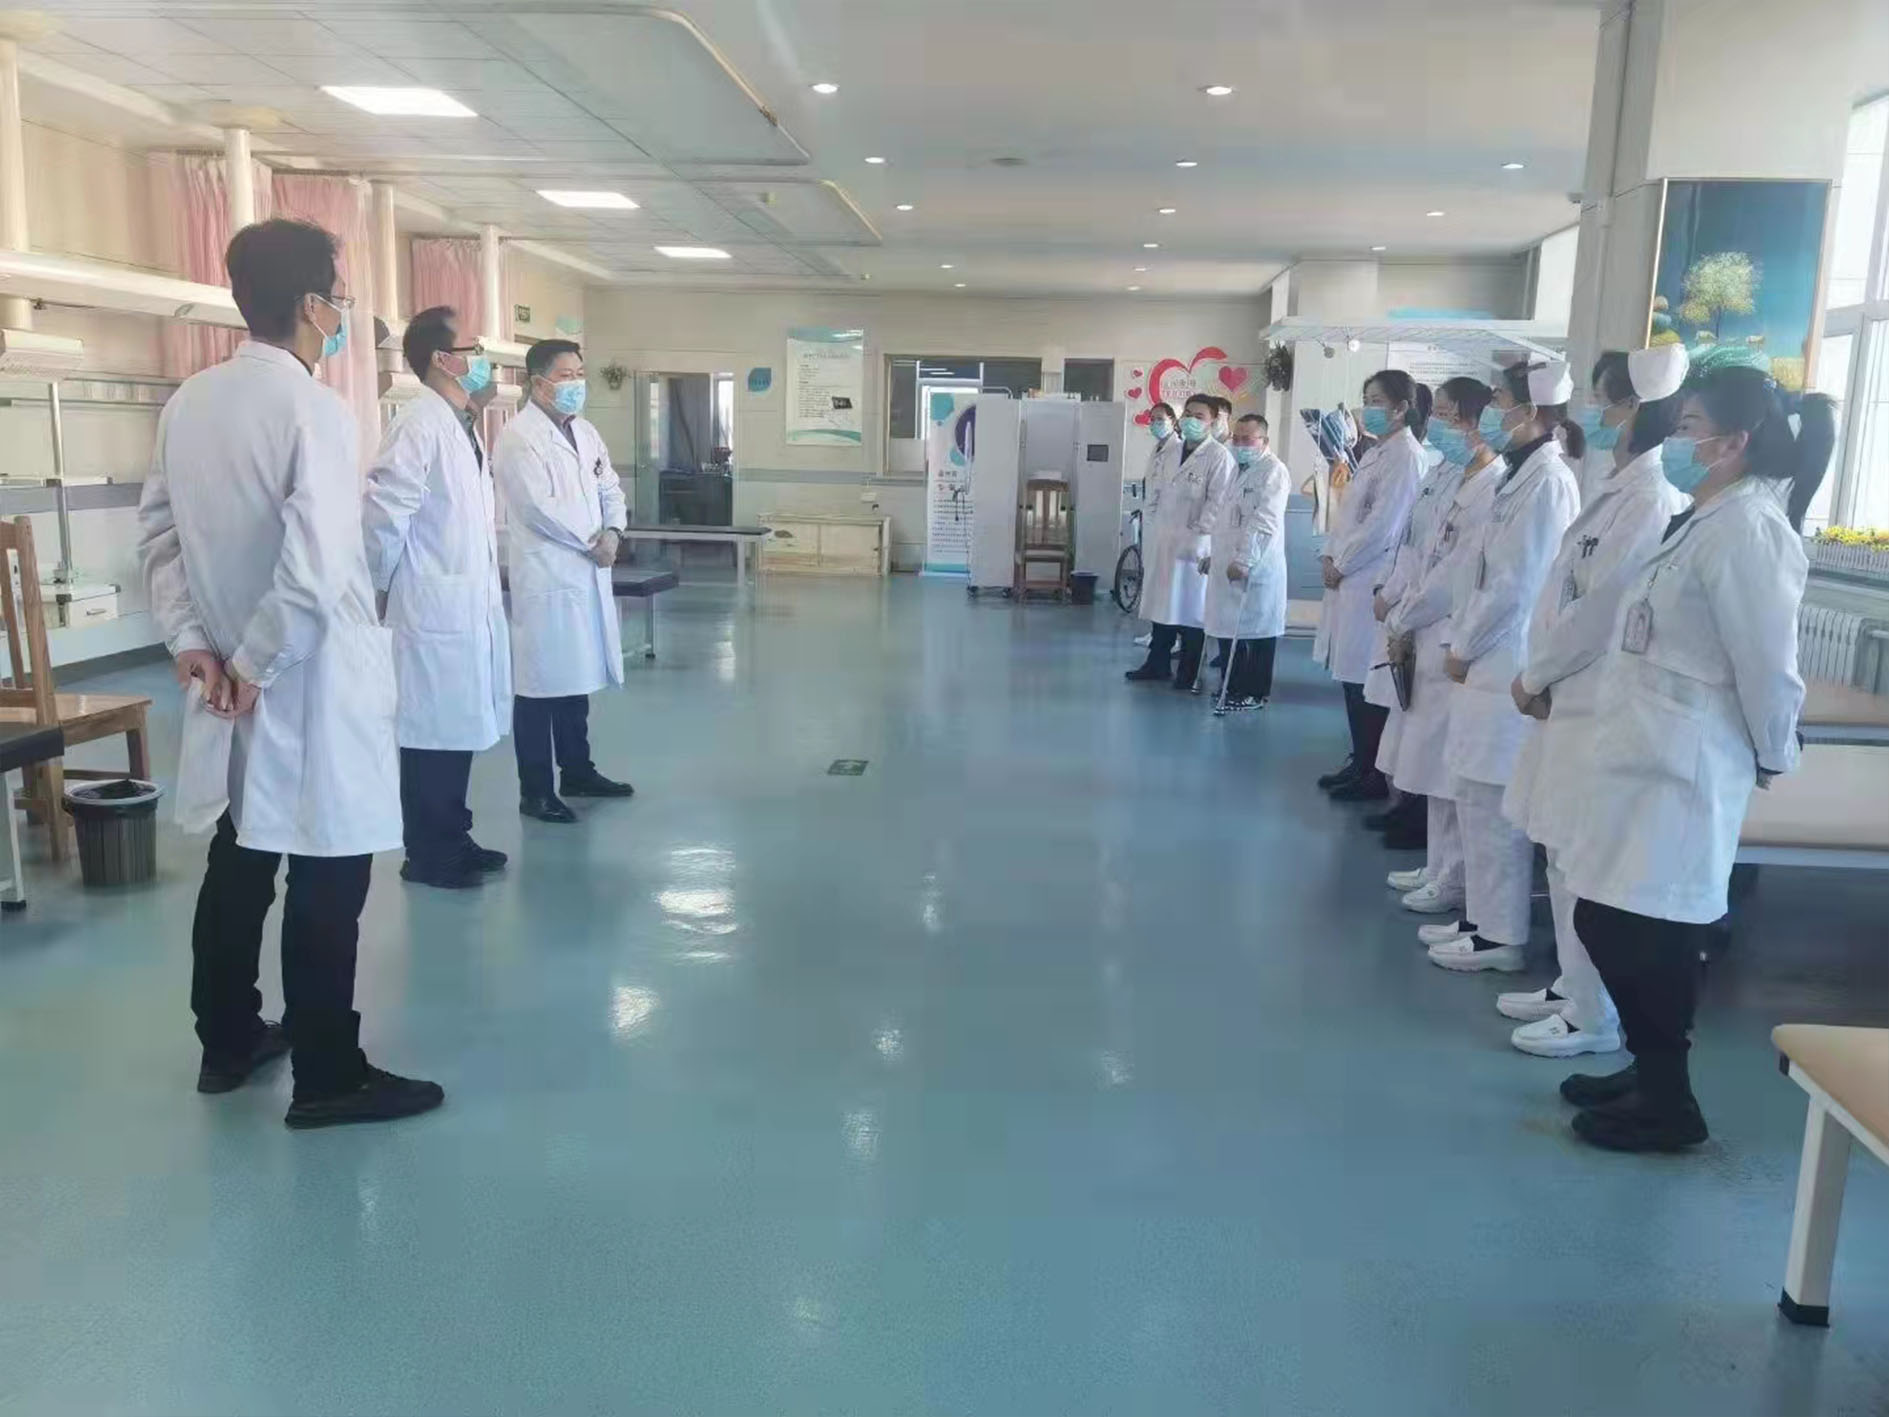 卫企协医院康复管理分会带教专家段付前老师到龙江县第一人民医院带教指导工作